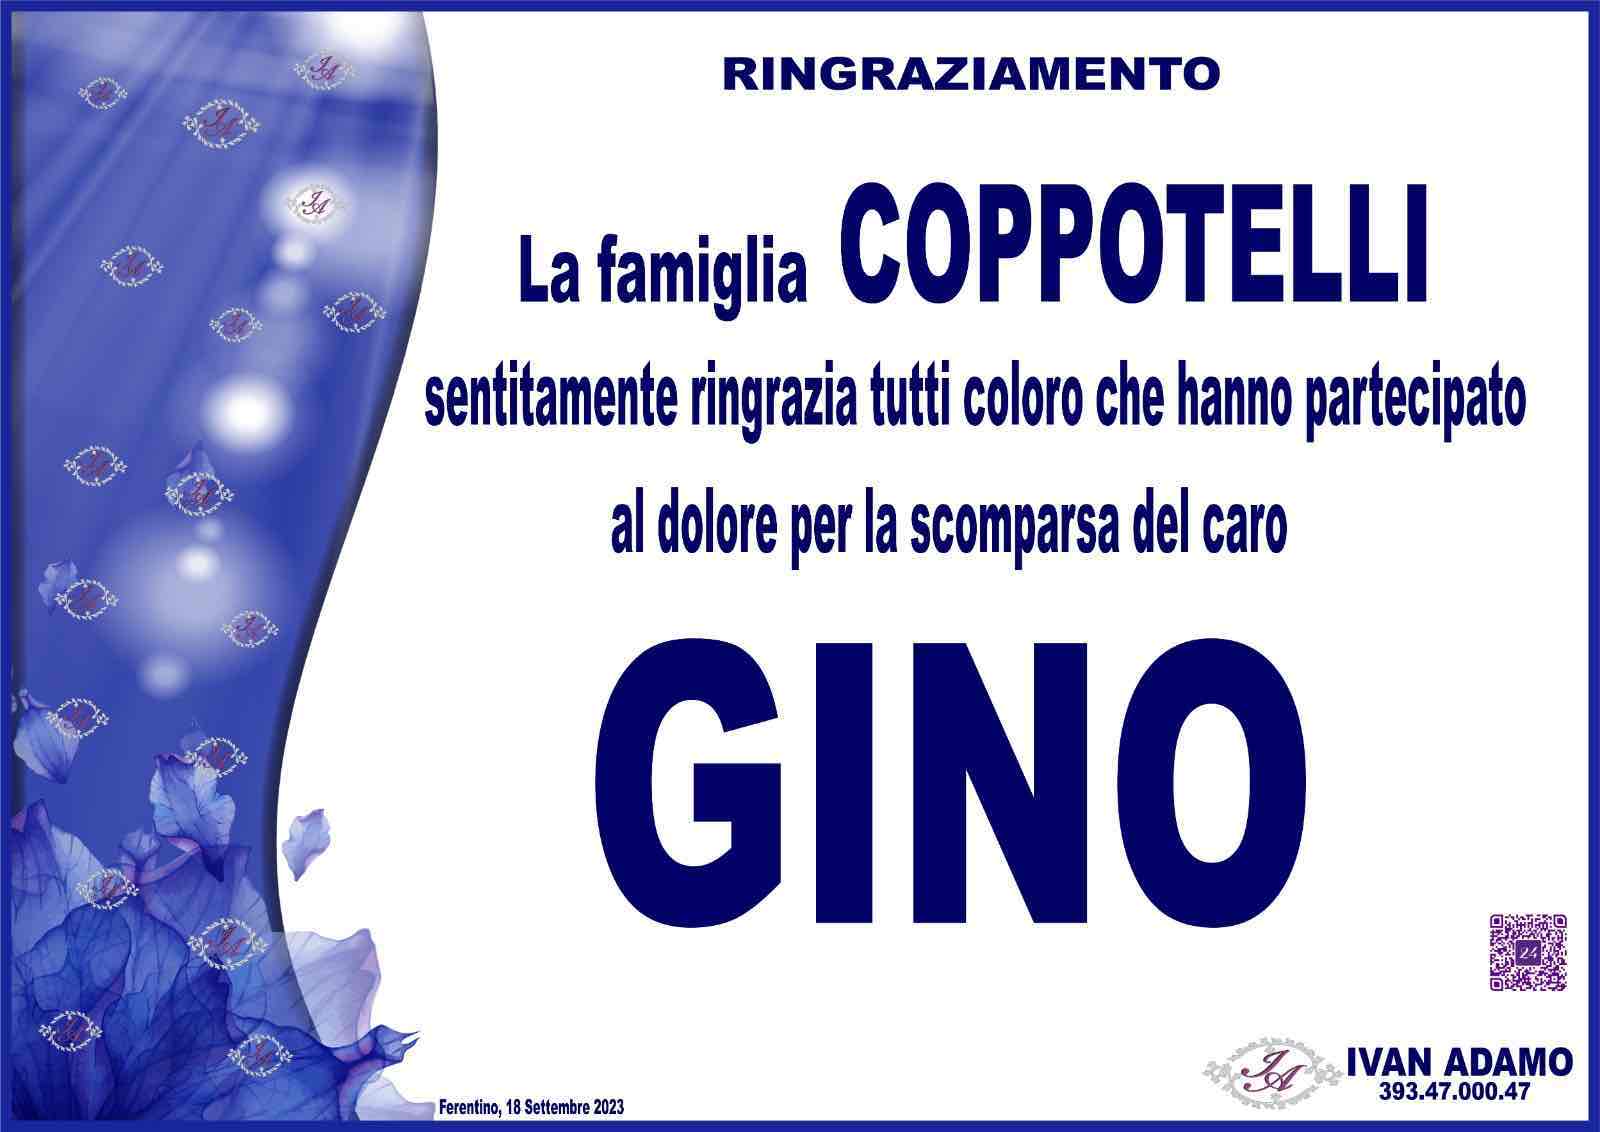 Gino Coppotelli